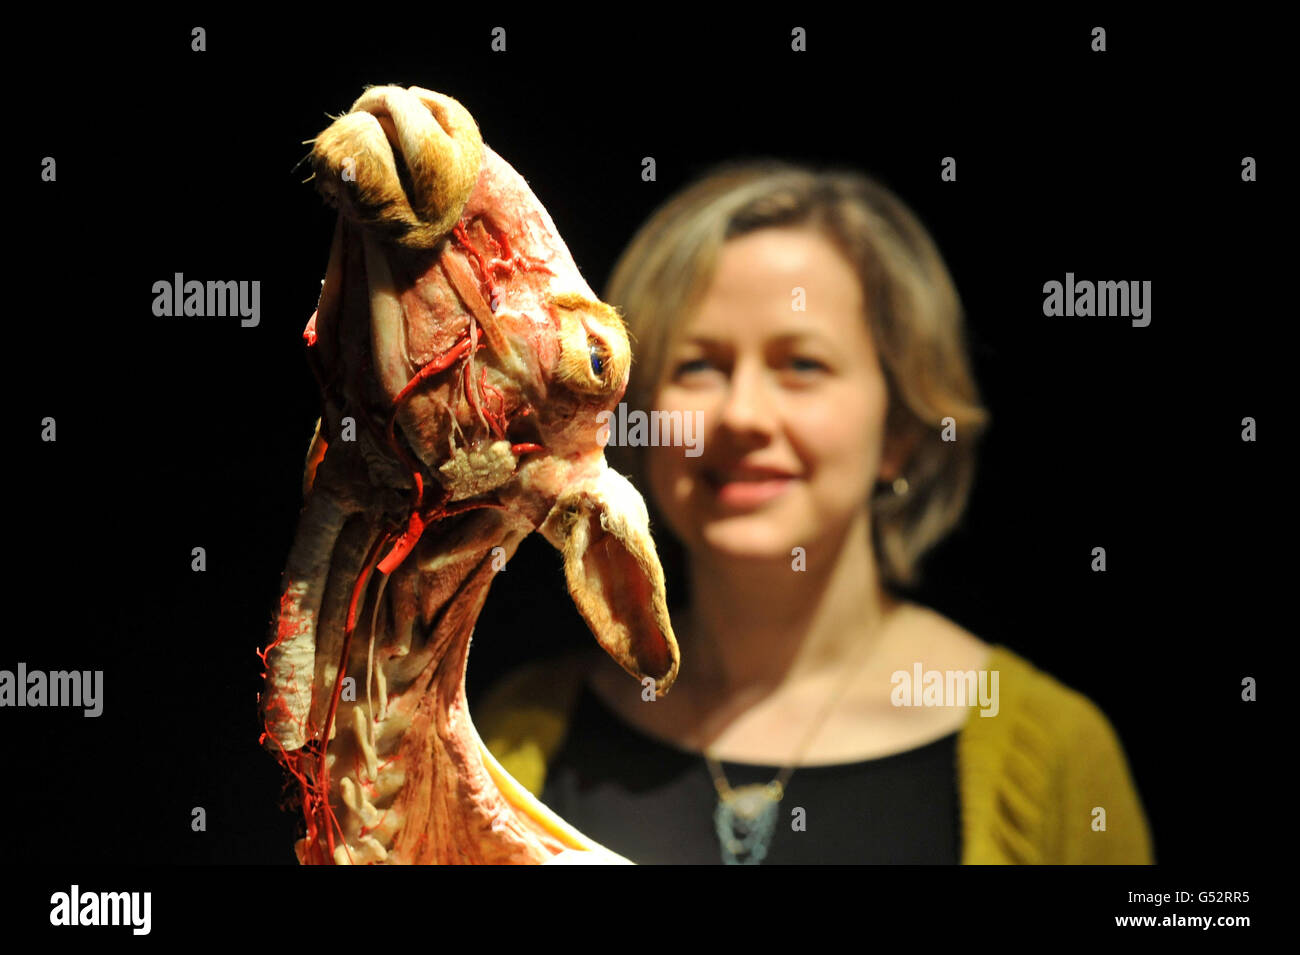 Louise Fitton, directrice de l'exposition, voit un mouton plâtiné, lors du lancement de la nouvelle exposition Animal Inside Out, mettant en valeur l'anatomie des animaux, au Musée d'histoire naturelle de Londres. Banque D'Images